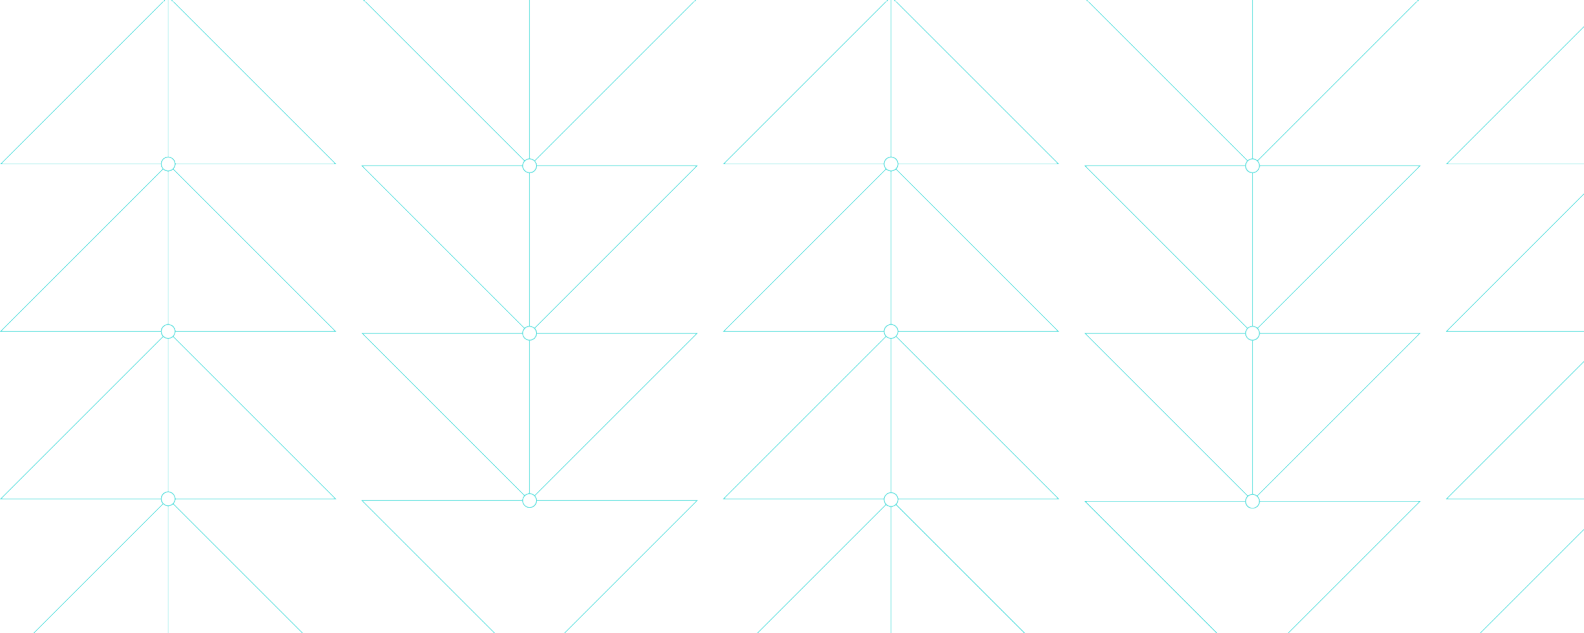 Illustrazione che mostra sottili linee blu che formano delicati motivi triangolari